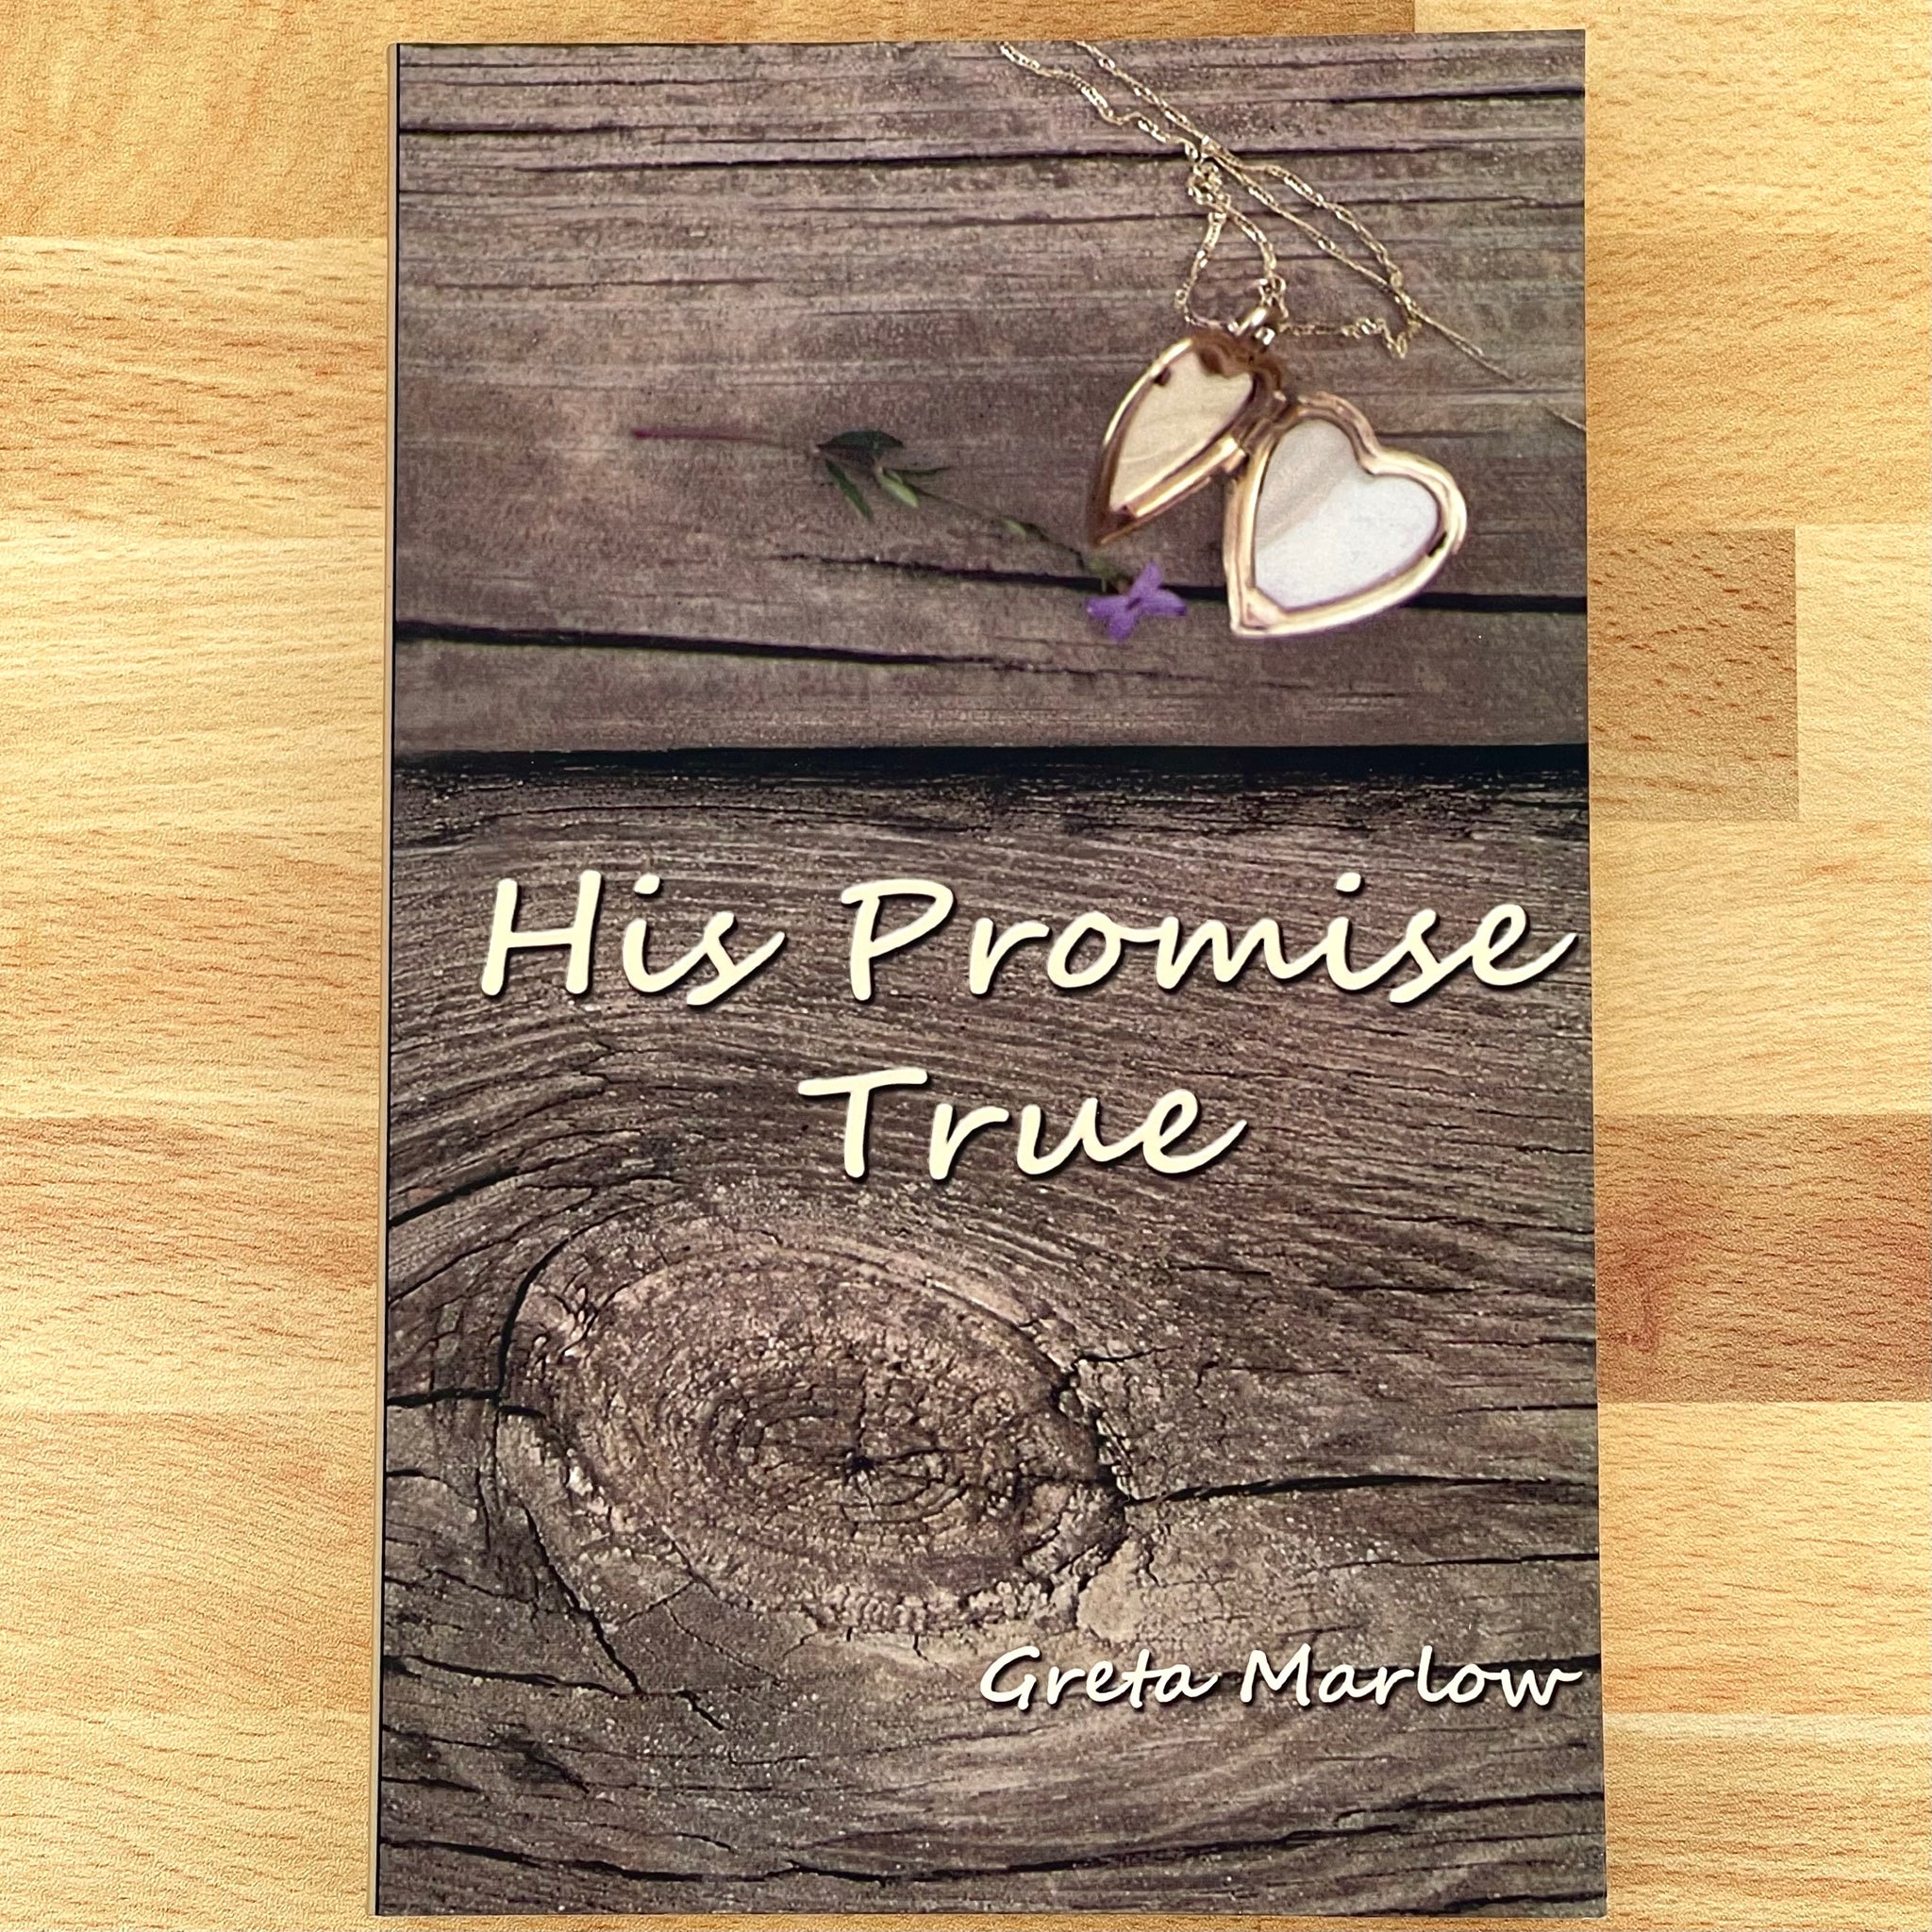 Book - His Promise True